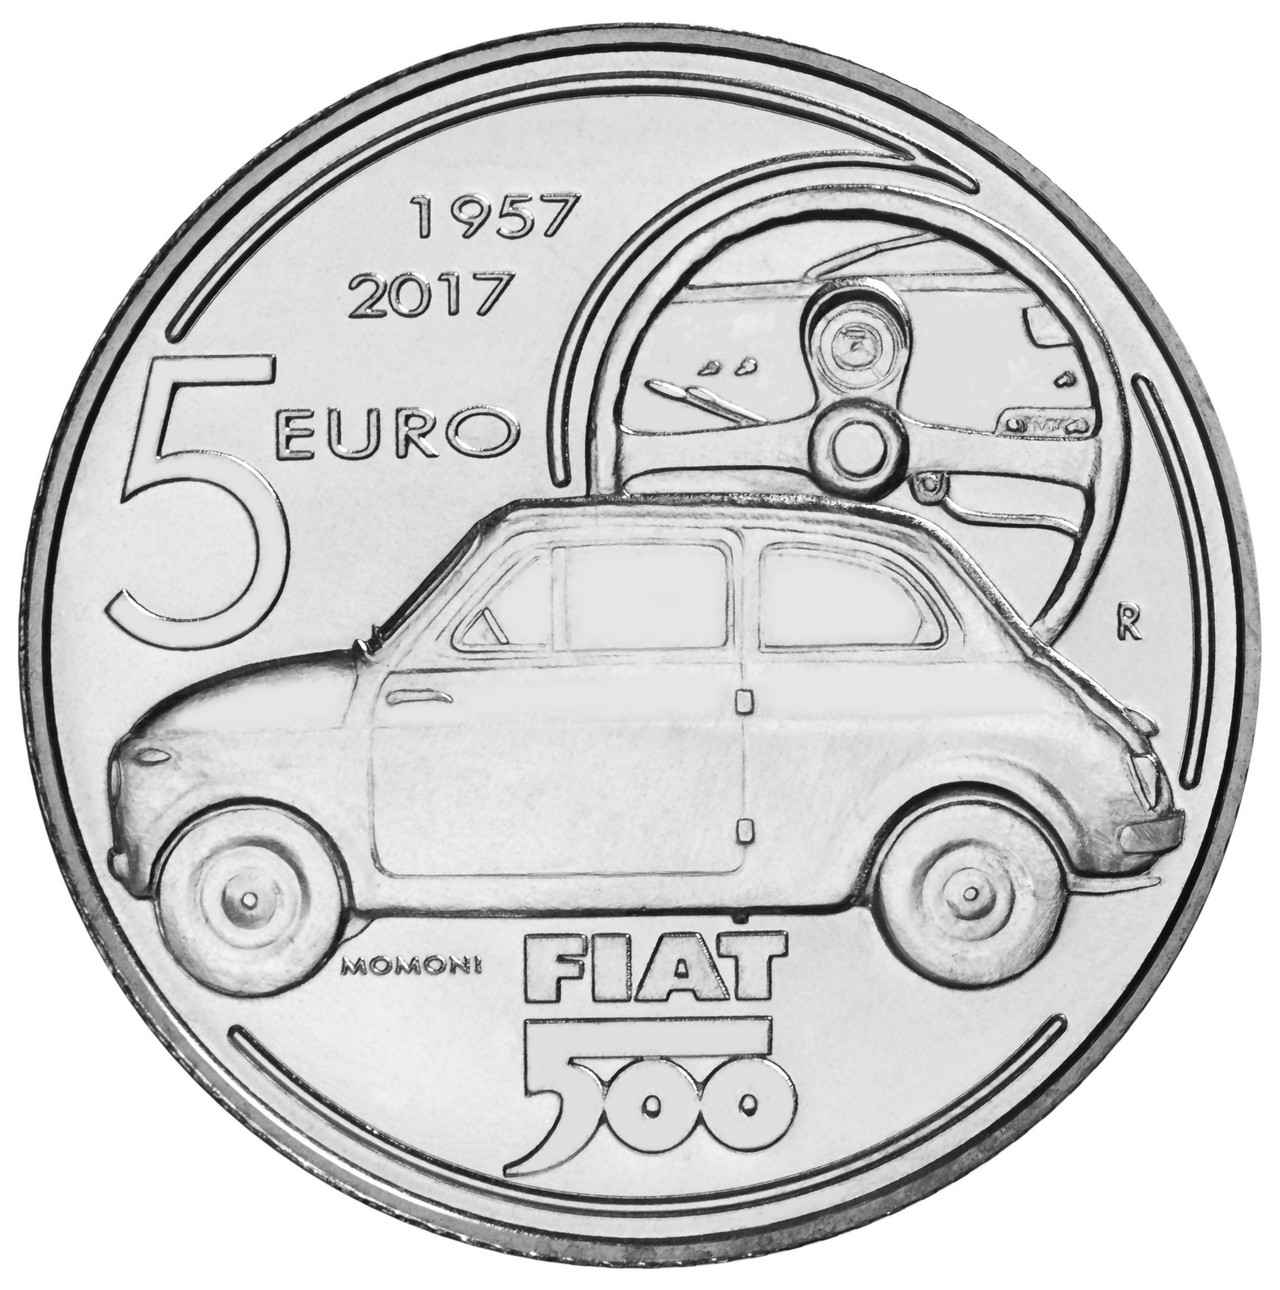 Fiat 500 moneta celebrativa